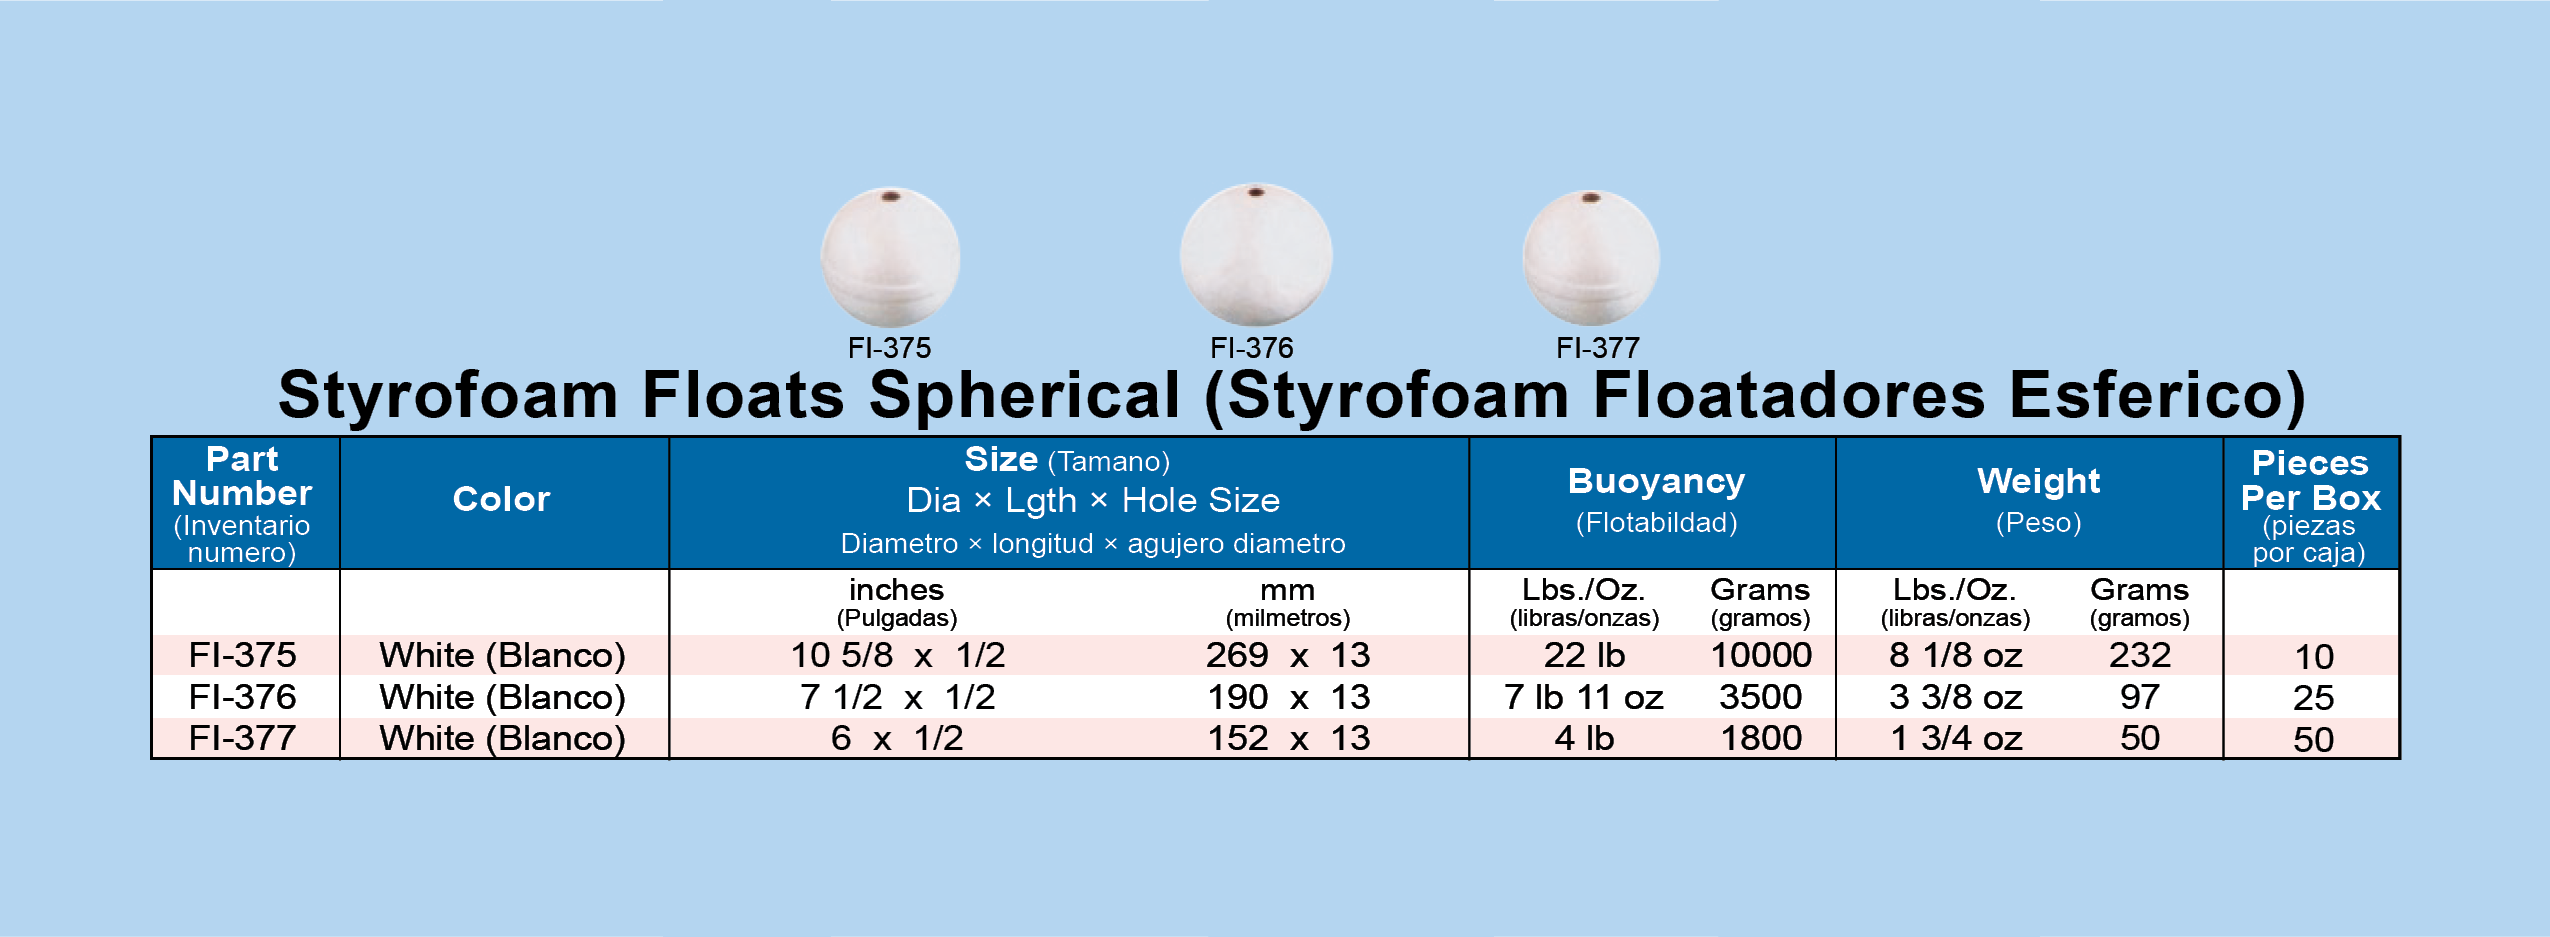 styrofoam spherical floats